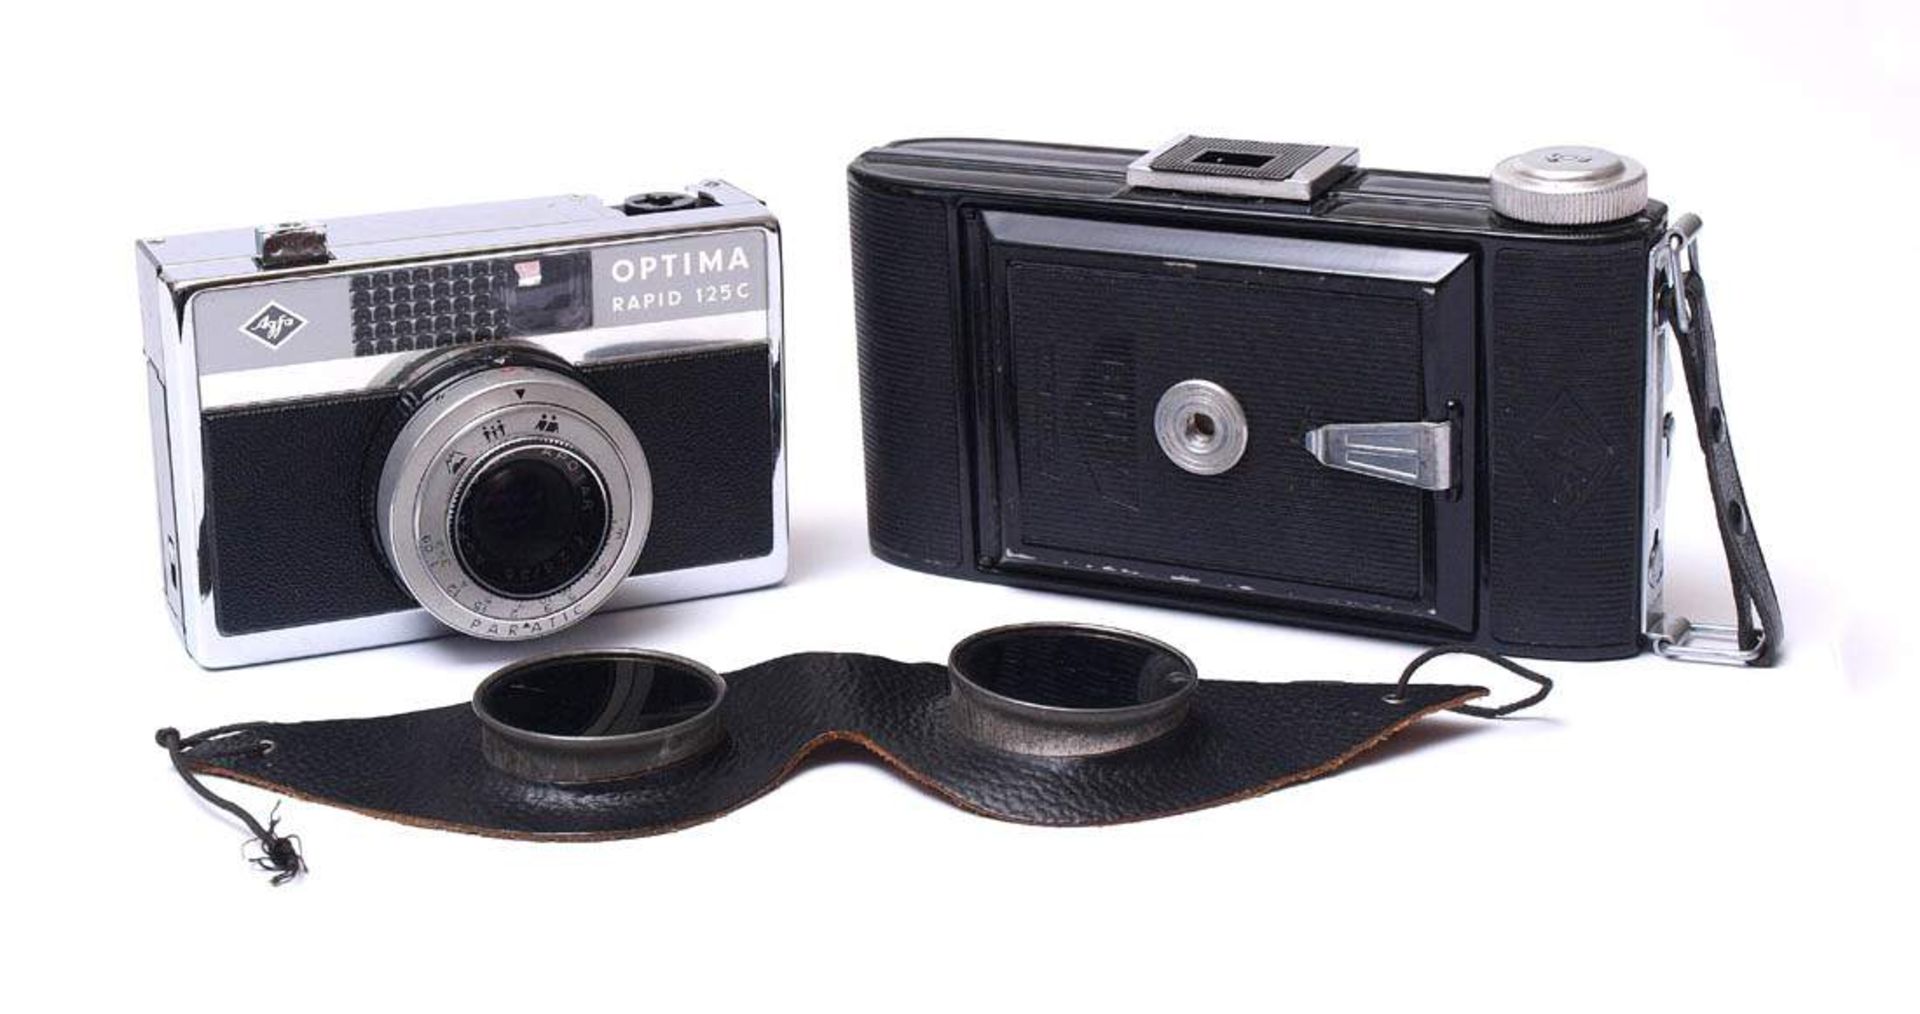 Kamera, BillyIm originalen Lederköcher. Dazu eine Agfa Optima Rapid 125 und eine Sonnenbrille mit